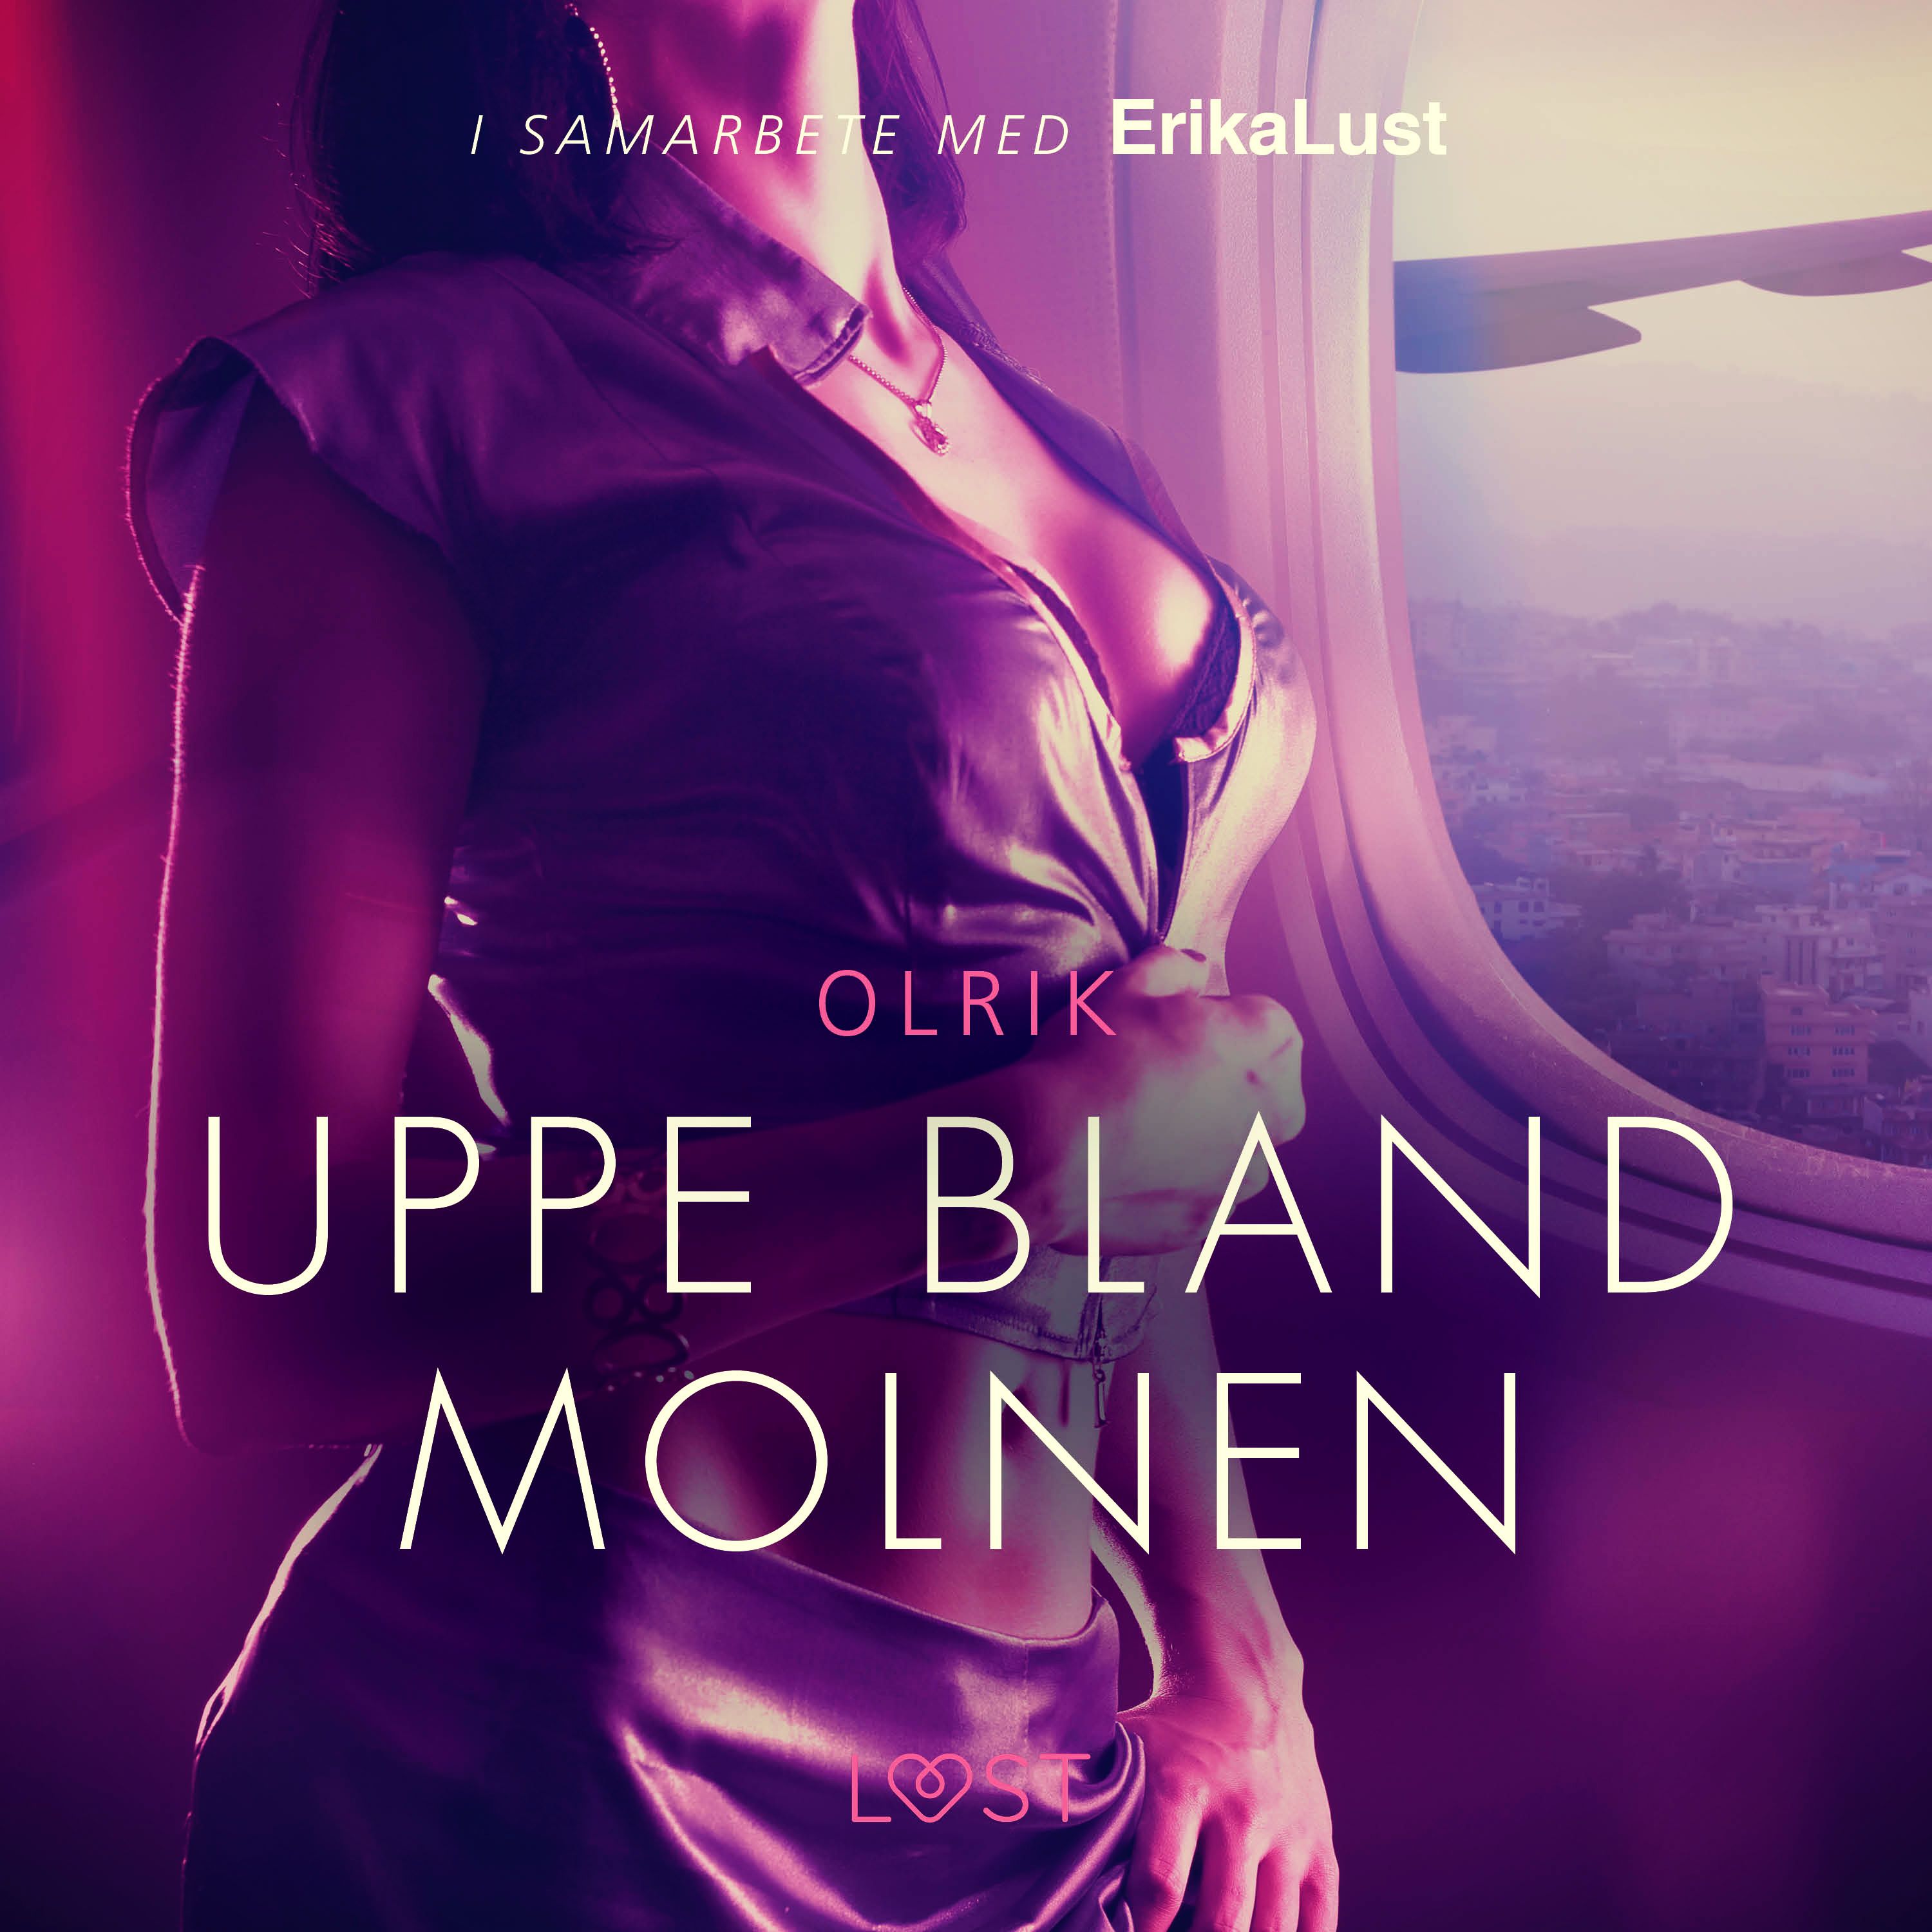 Uppe bland molnen - erotisk novell, audiobook by Olrik